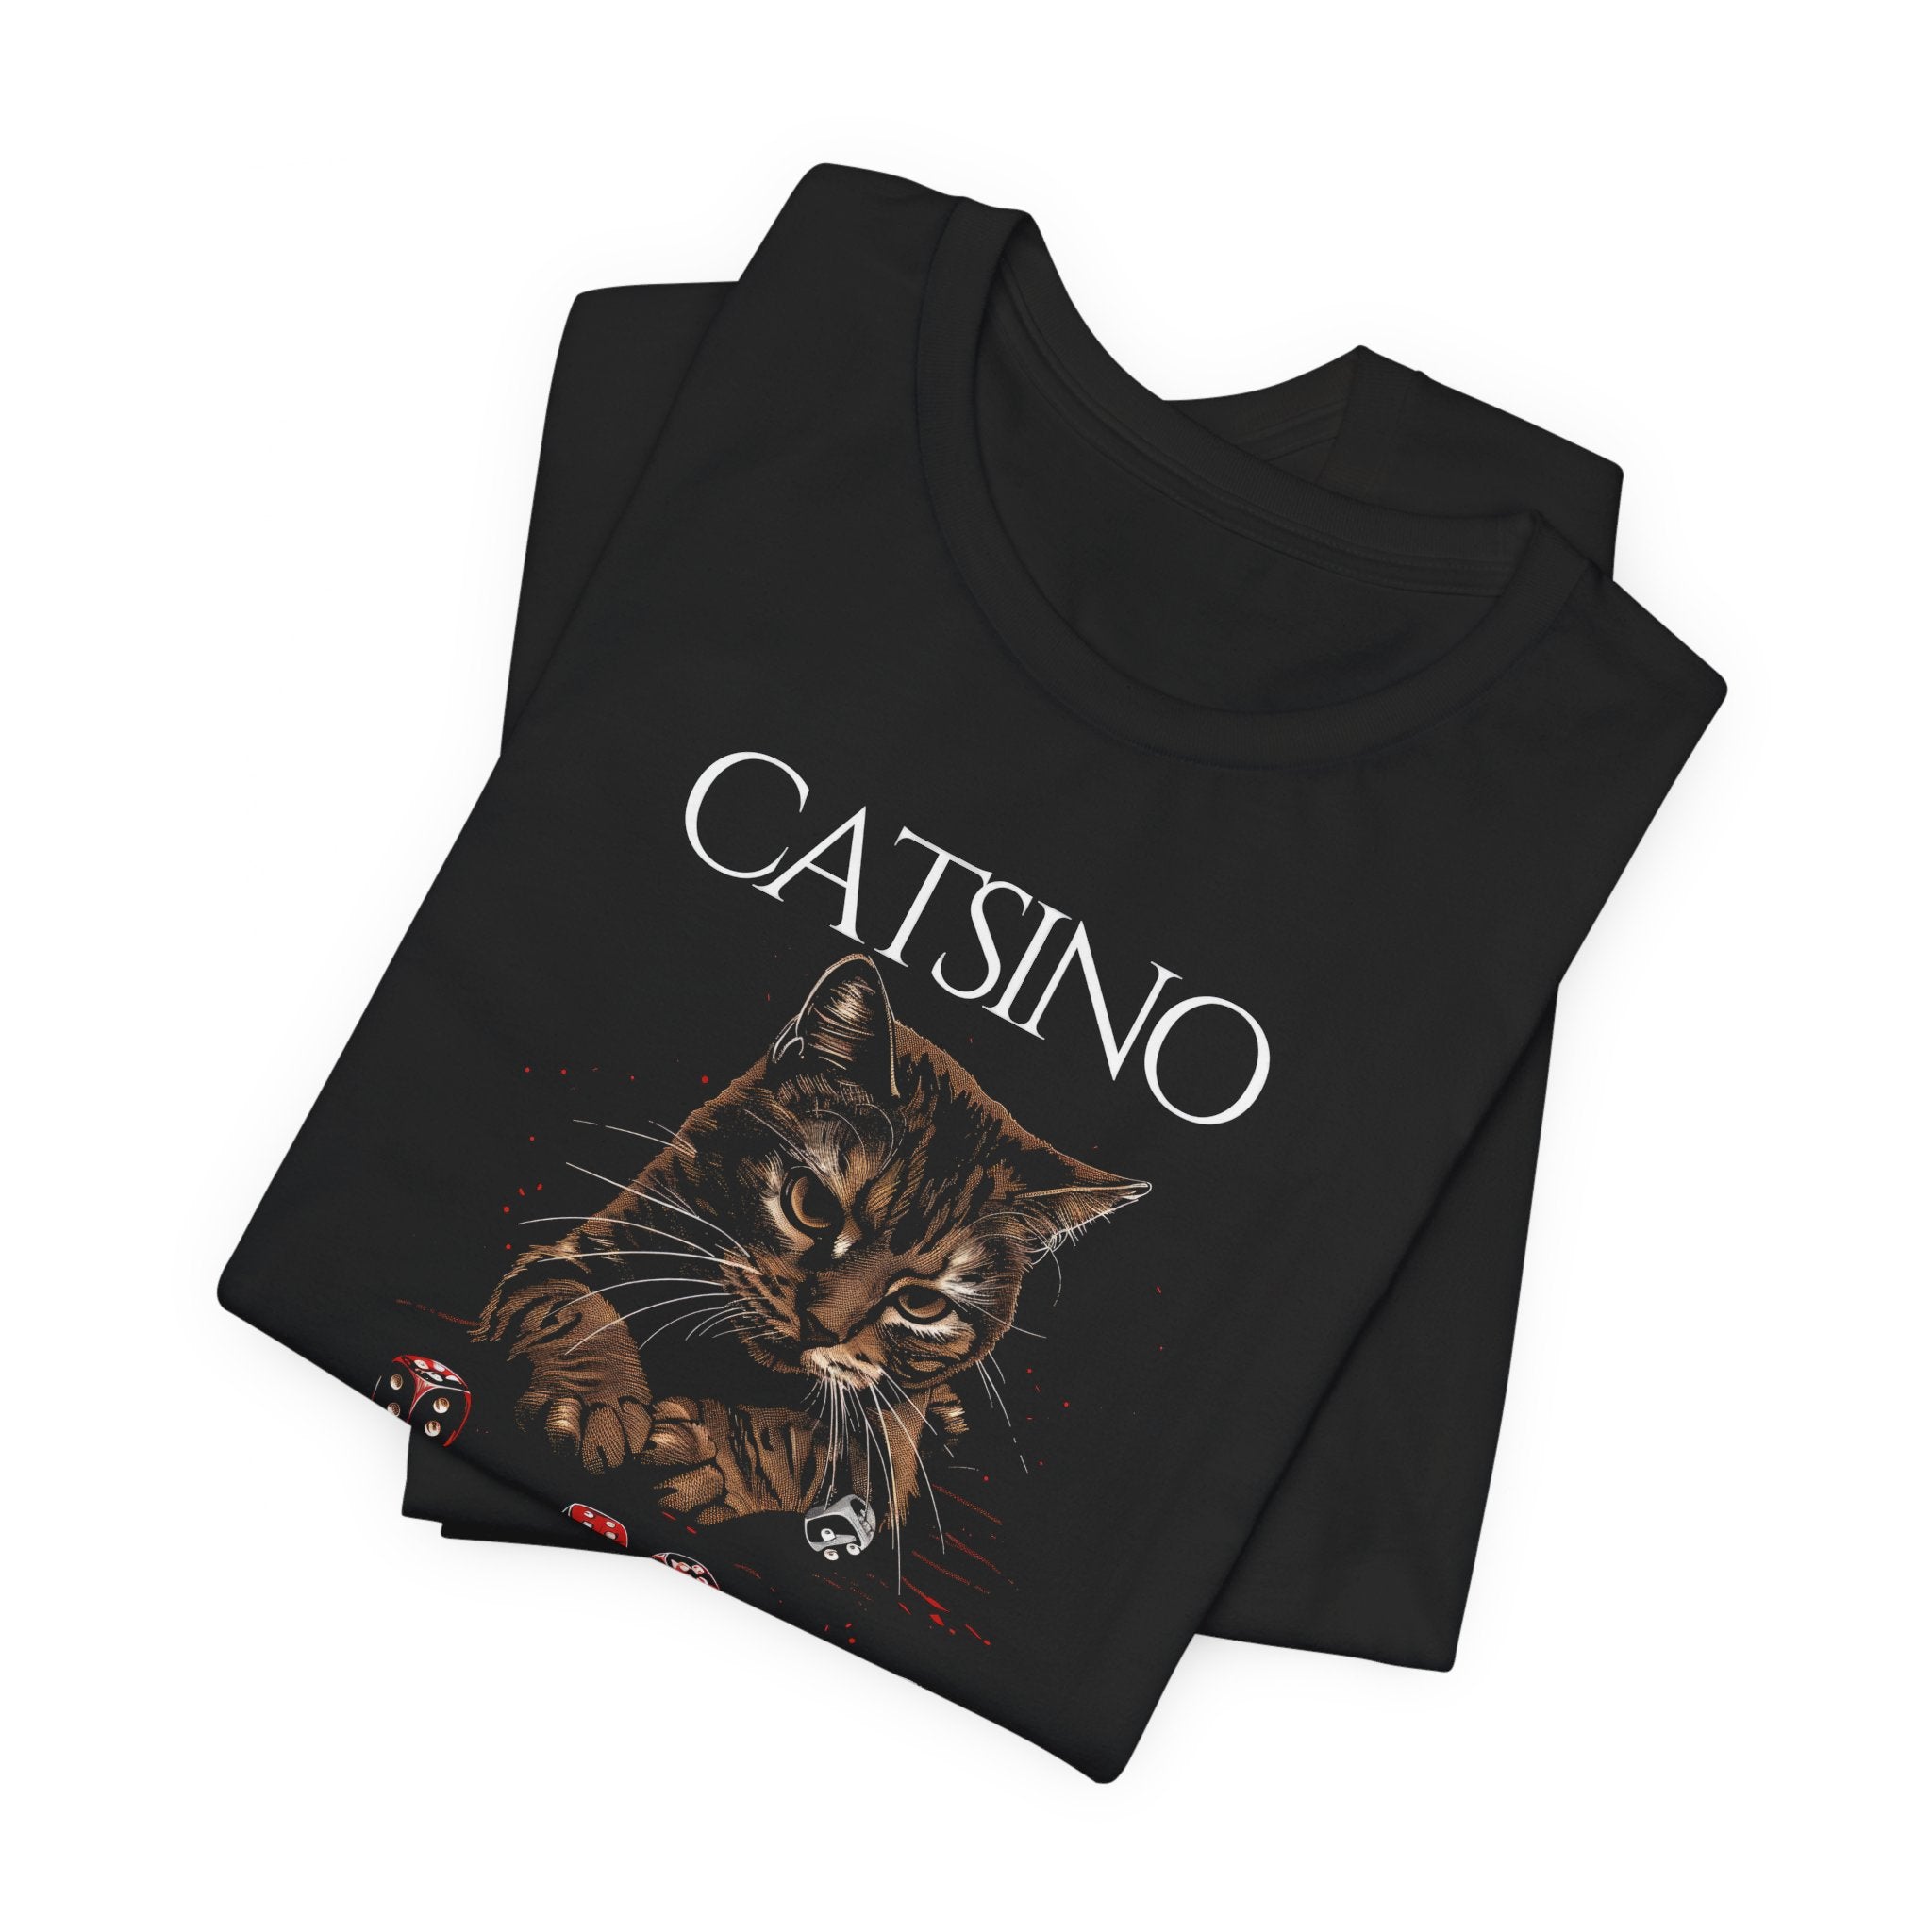 Catsino Funny Cat Shirt Cat Lover Tee